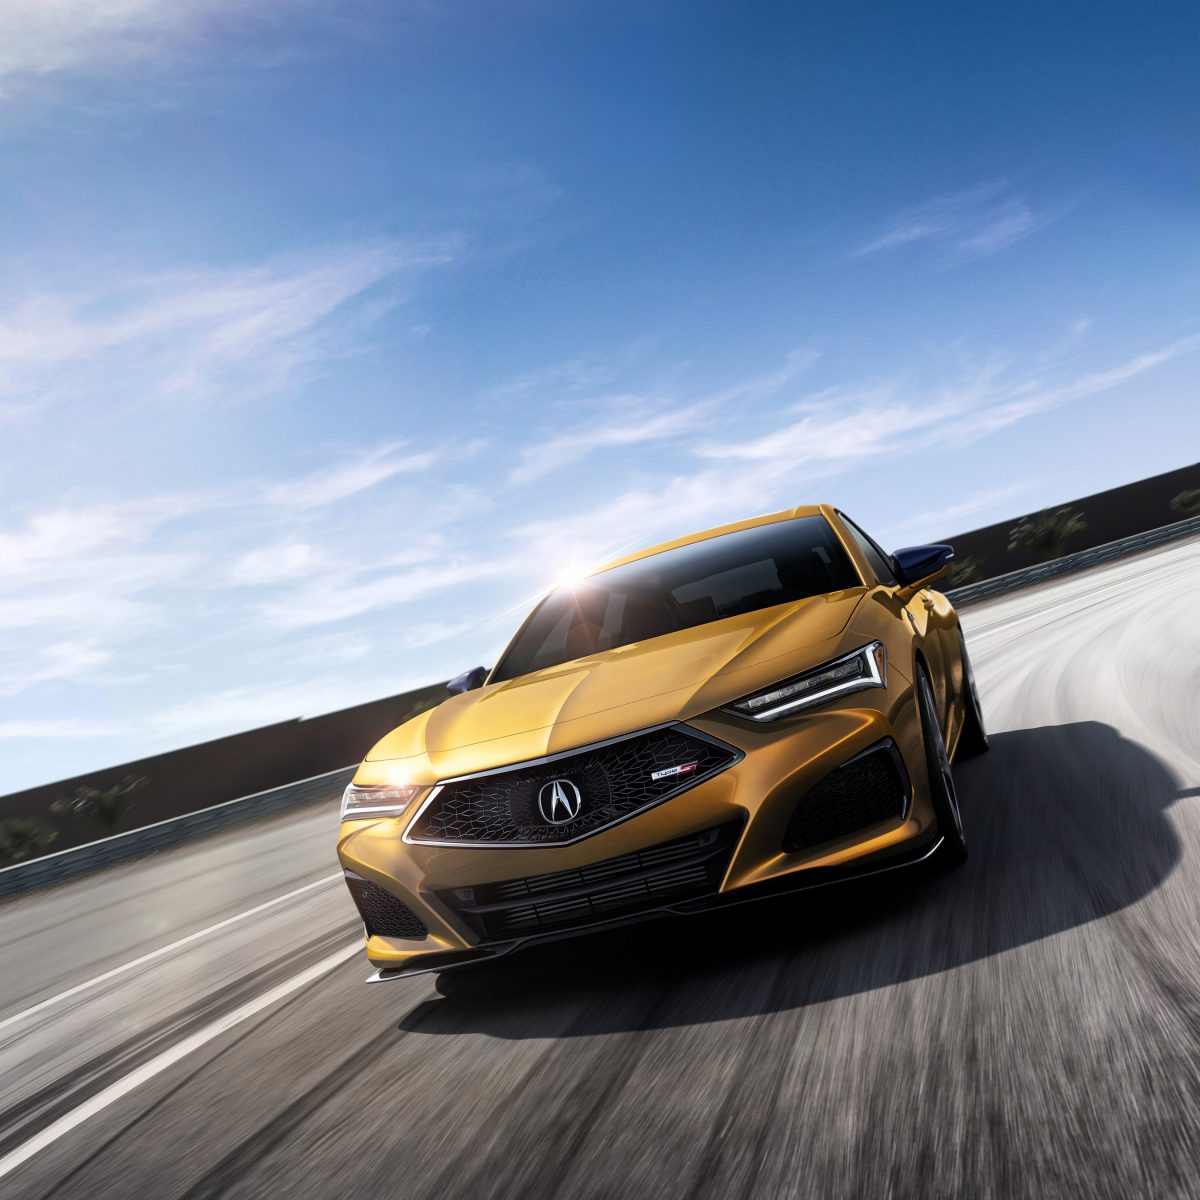 El completamente nuevo TLX 2021 eleva el rendimiento del sedán Acura con potencia turbo, plataforma exclusiva y estilo expresivo